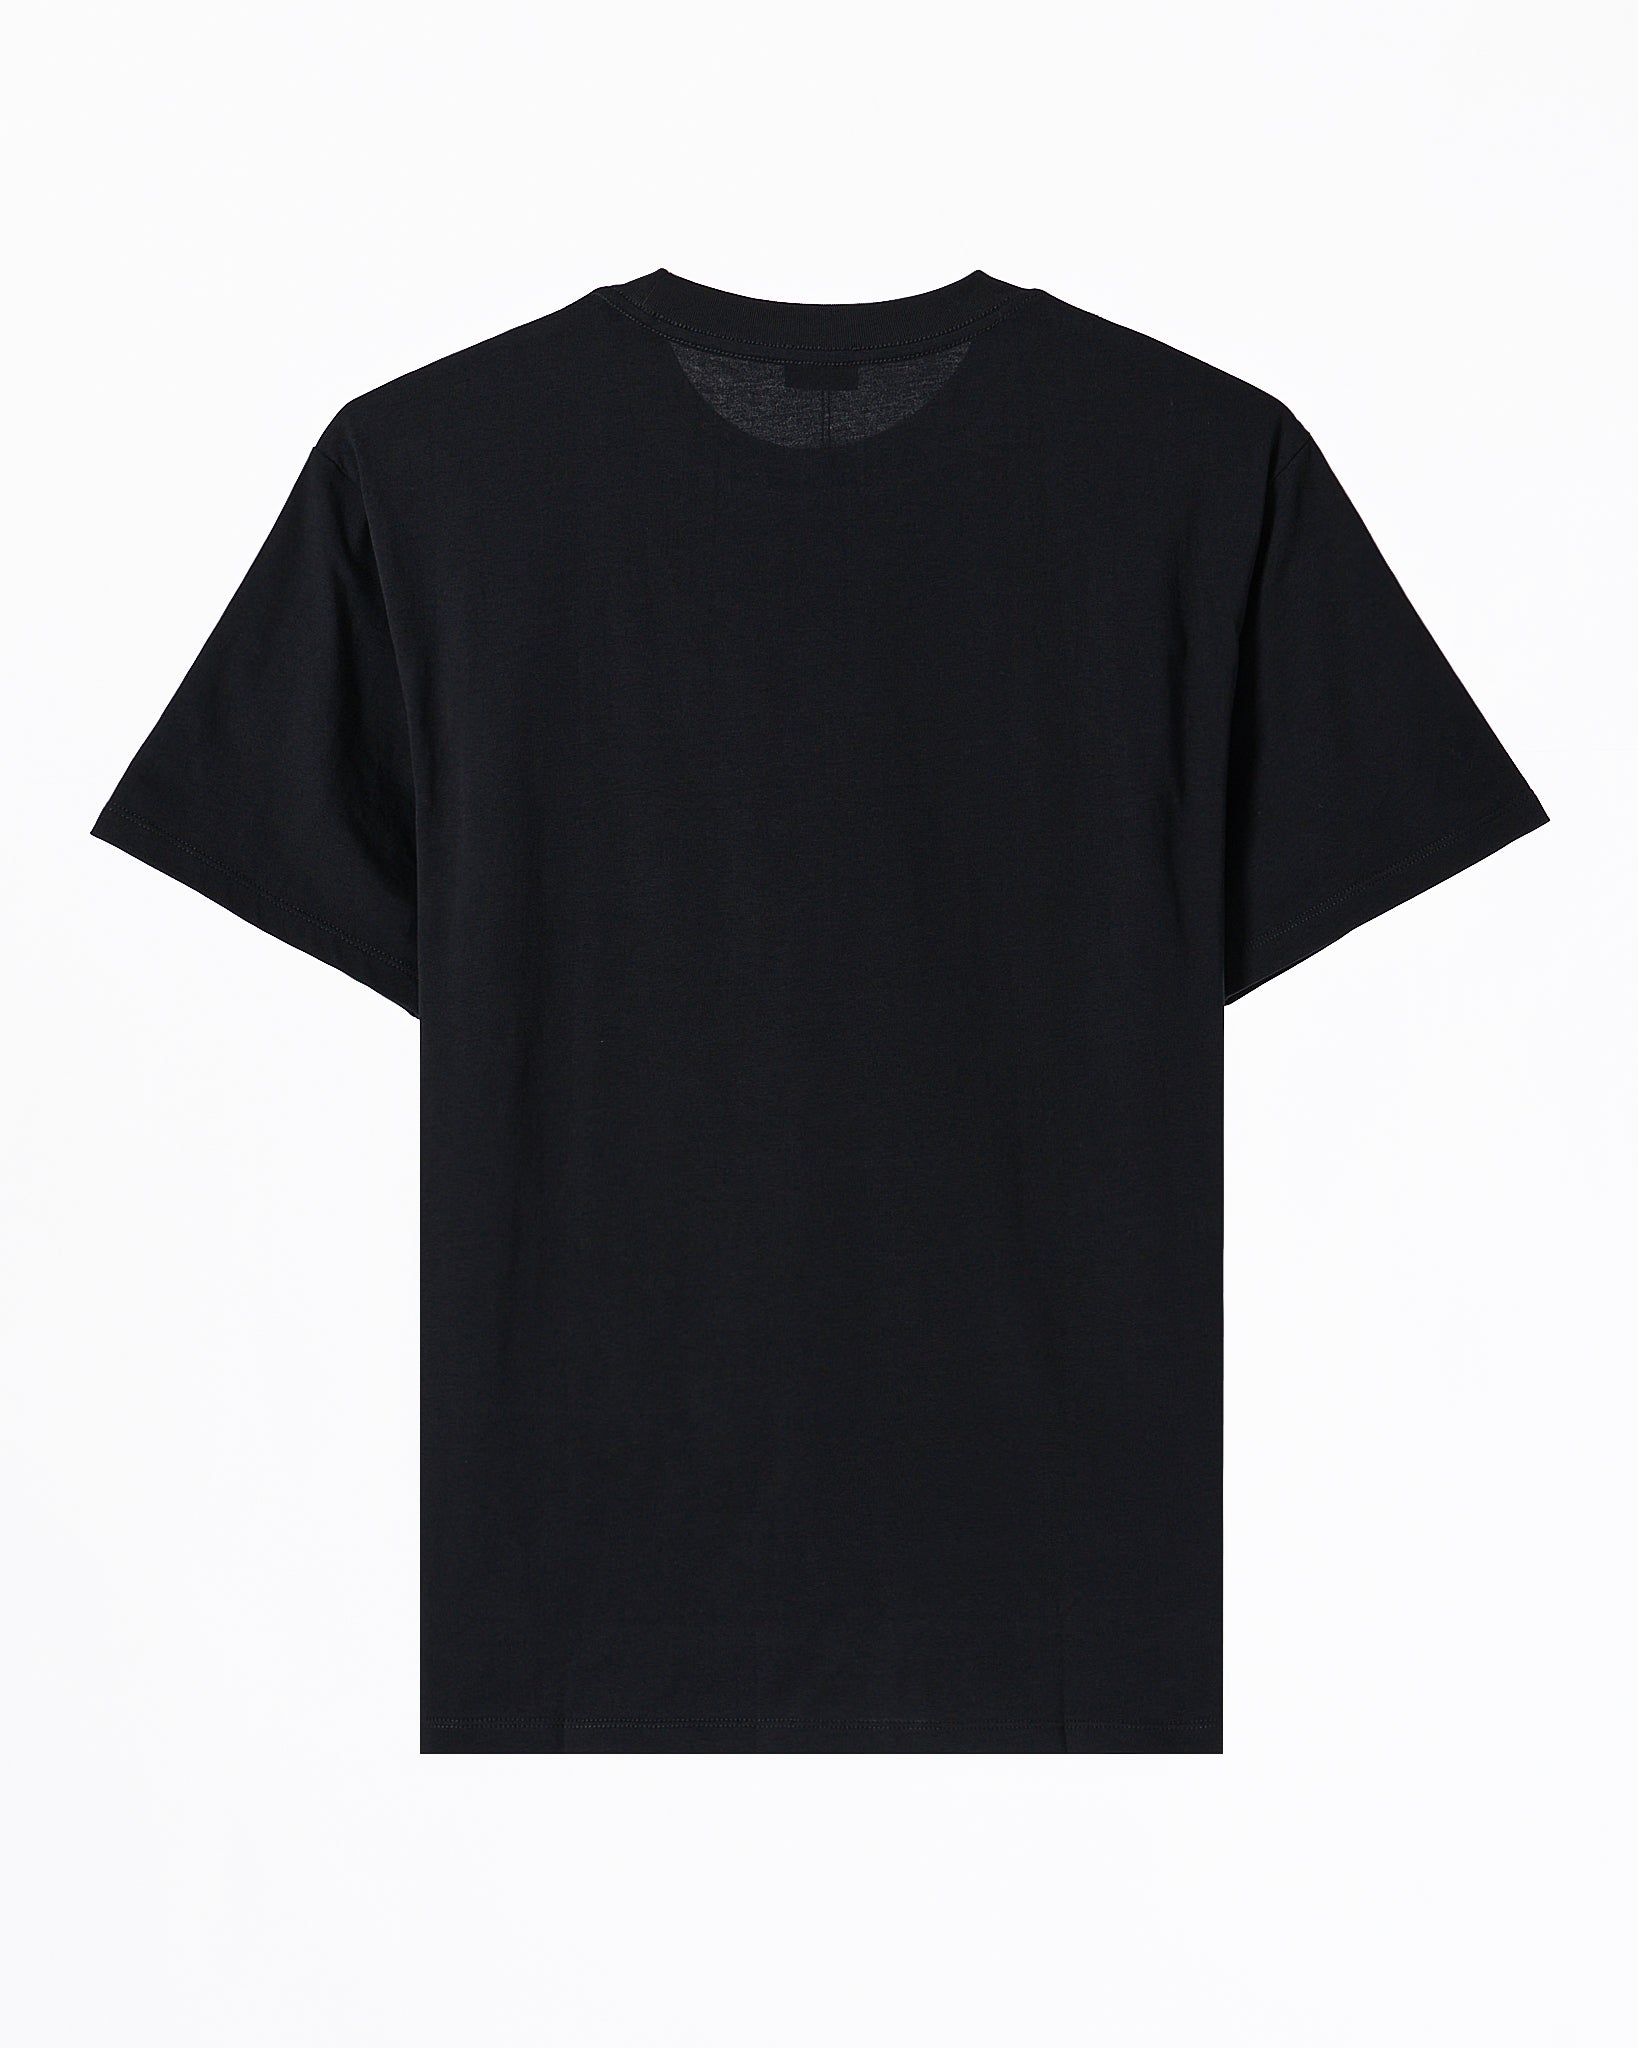 FEN Teddy Bear Printed Unisex Black T-Shirt 20.90